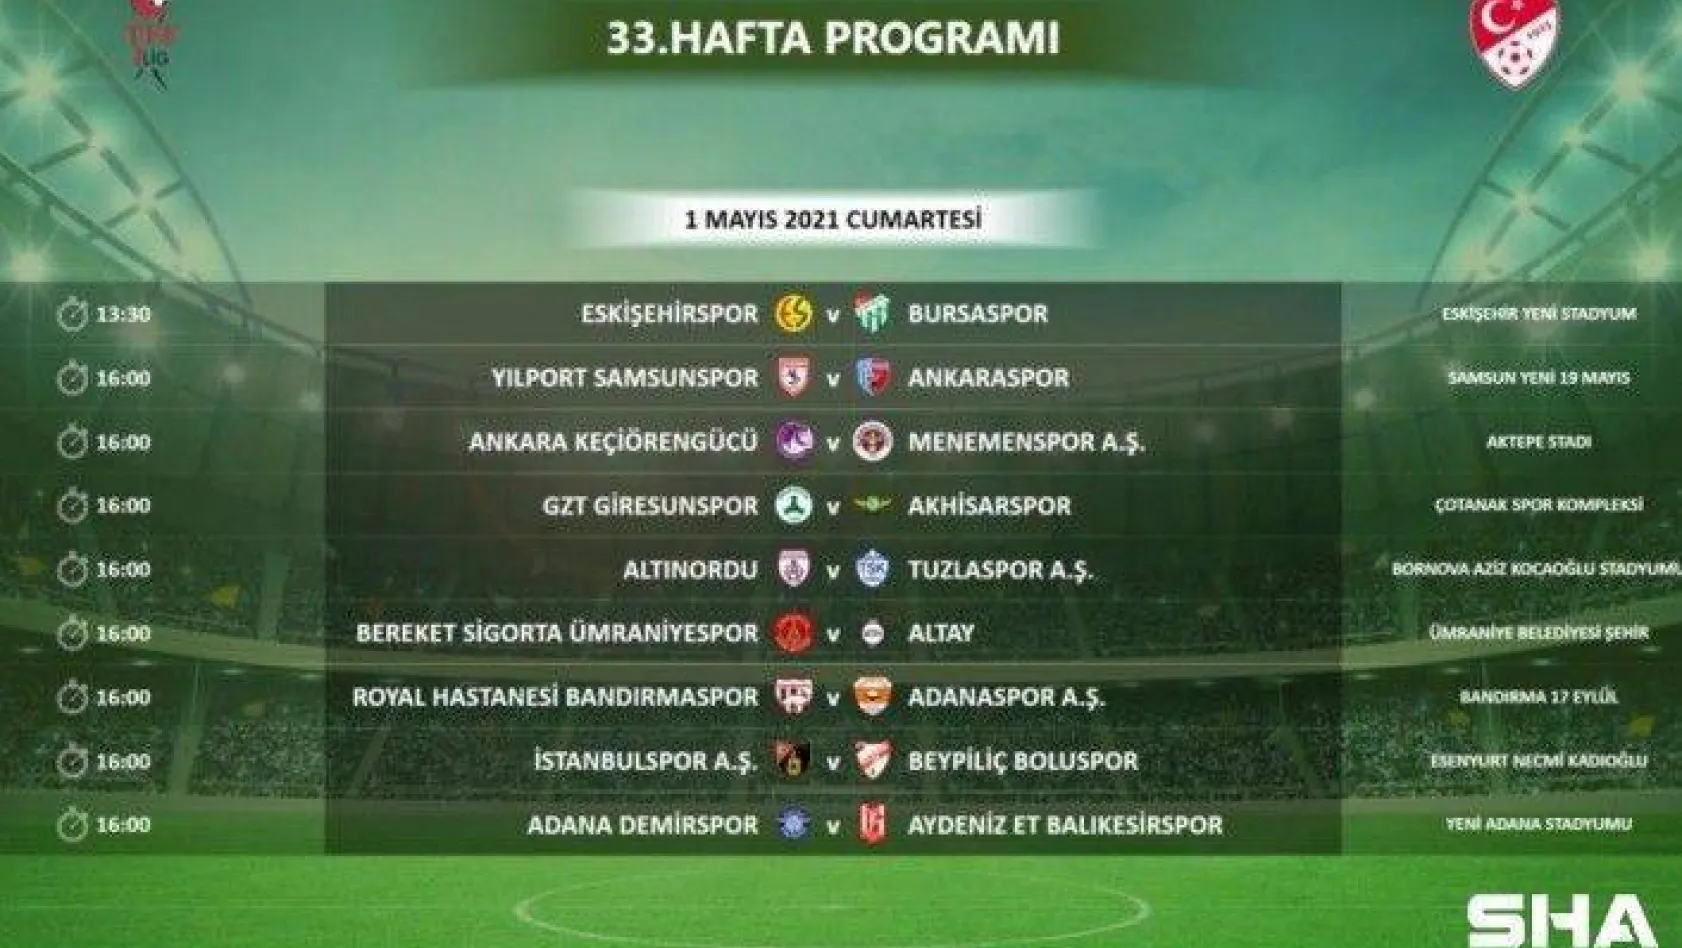 TFF 1. Lig'de 33. hafta programı açıklandı